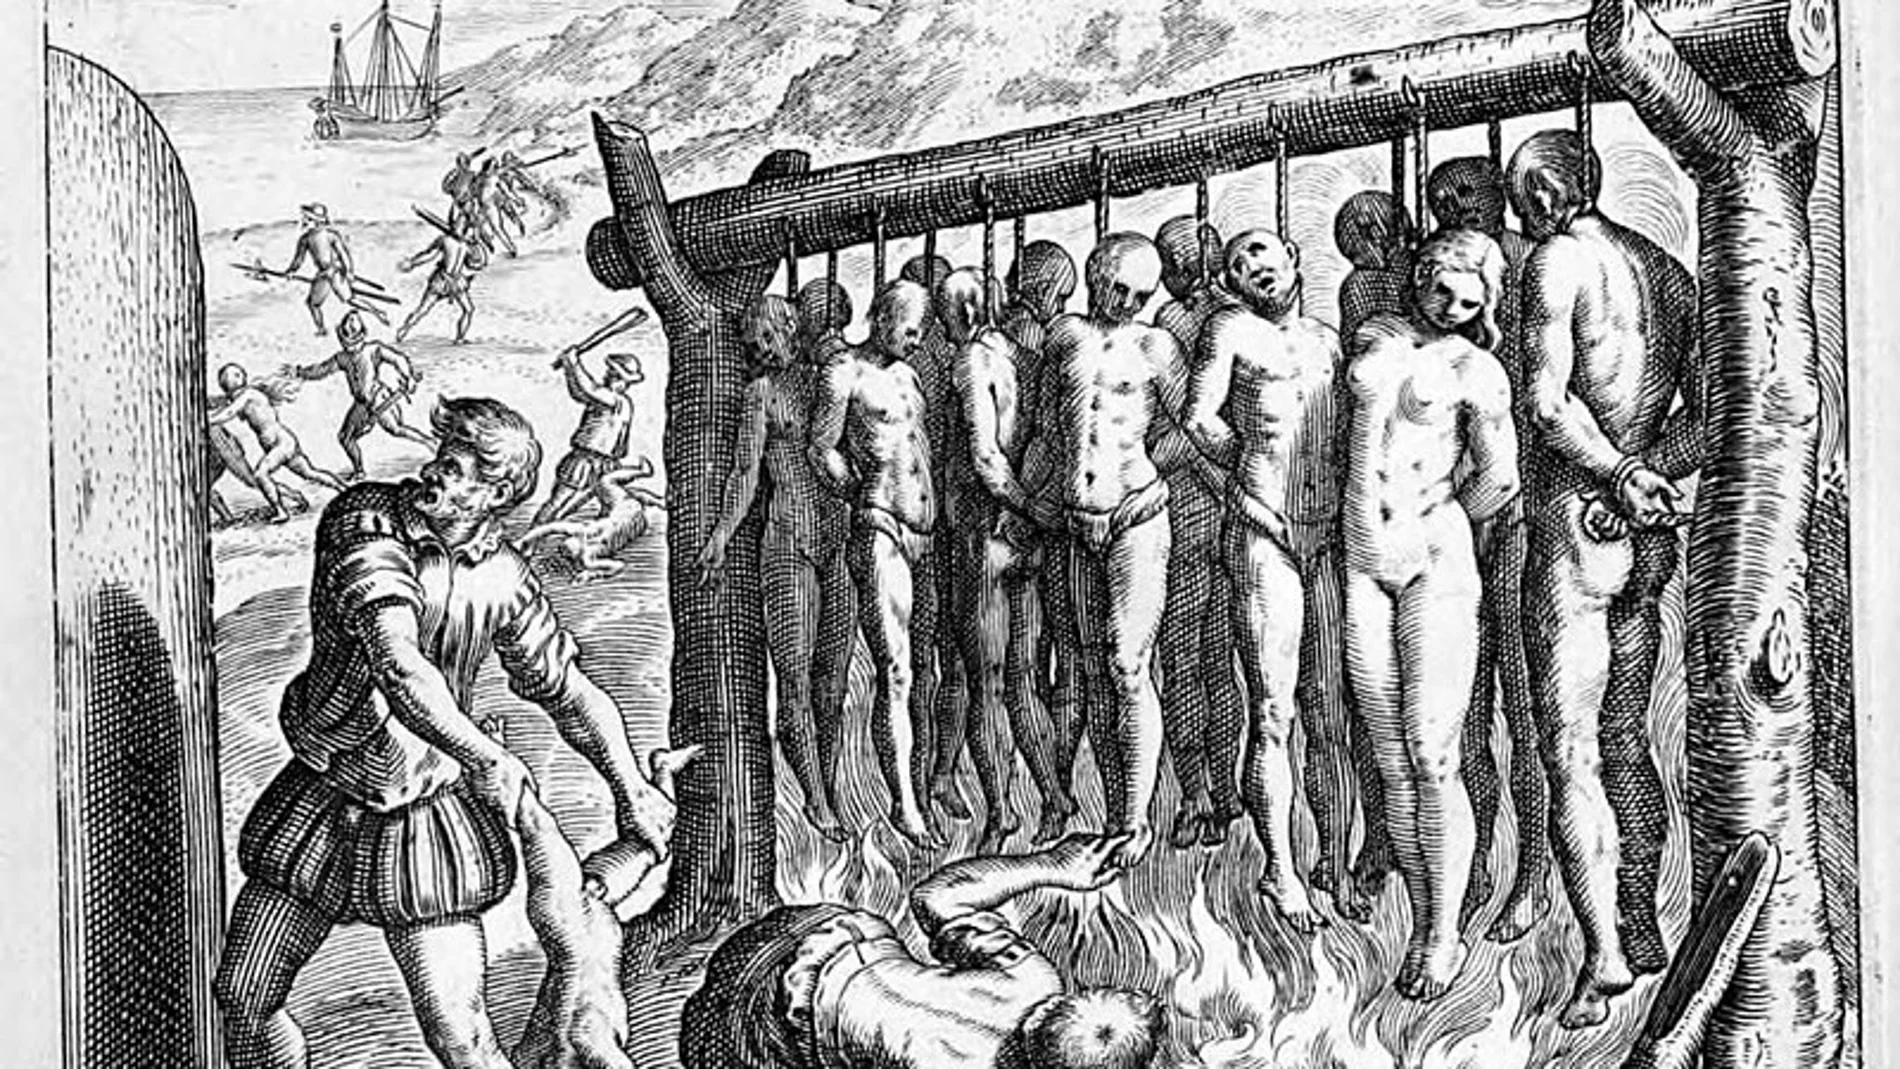 El grabador Theodor de Bry (1528-1598) aireó esta imagen de los españoles quemando indígenas en América